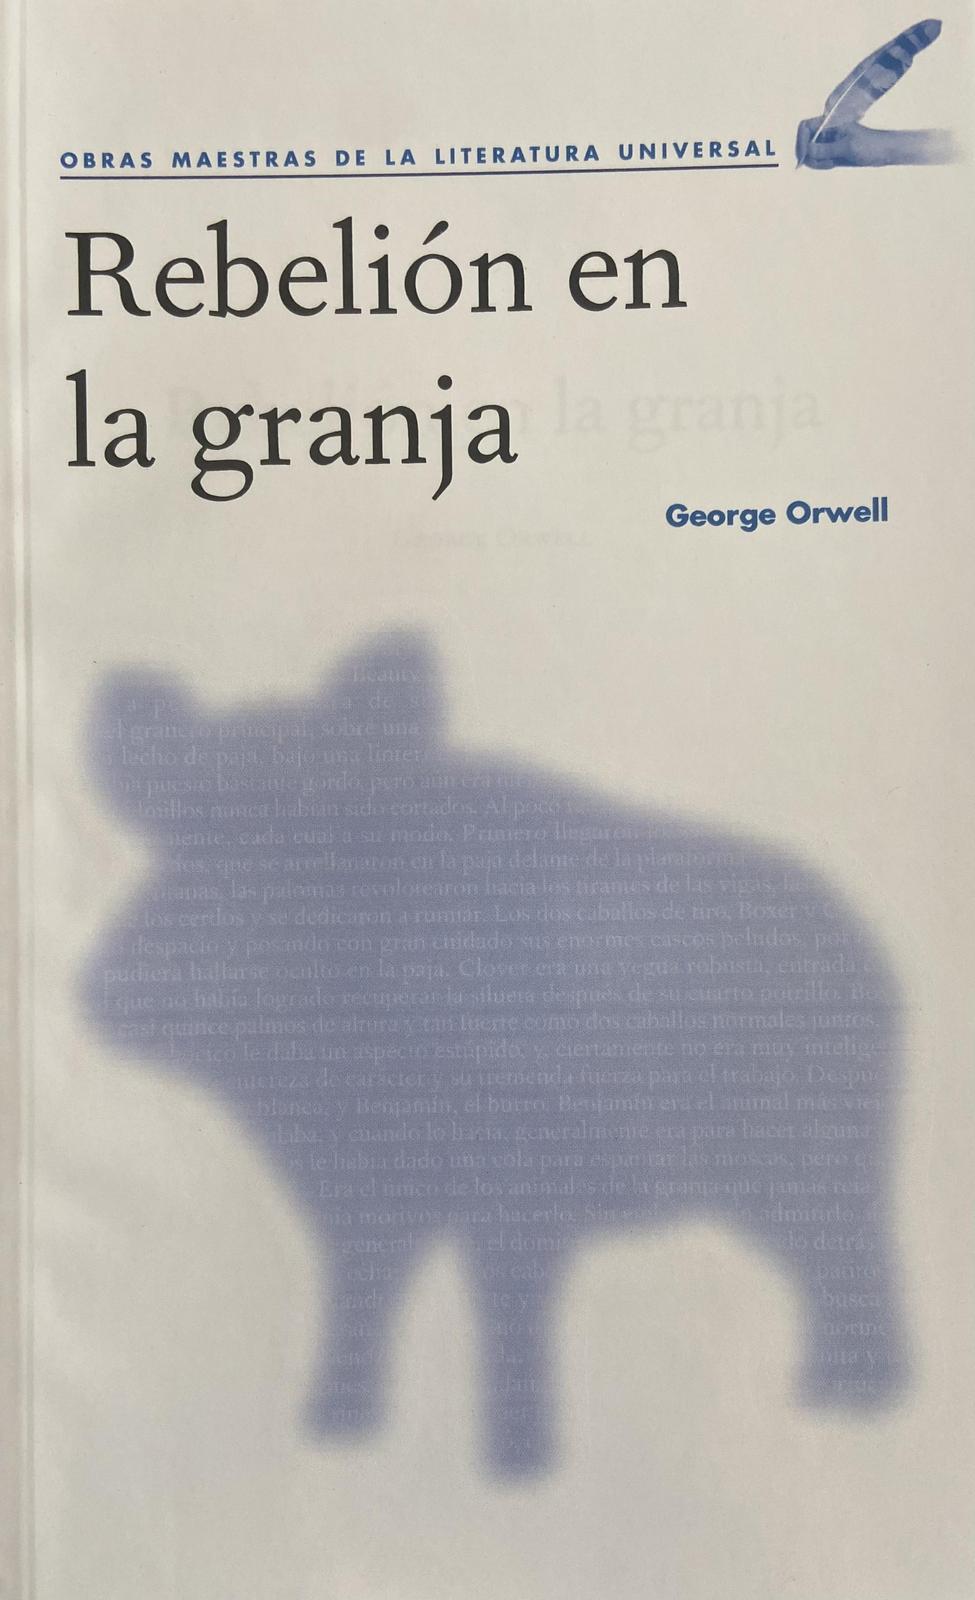 George Orwell: Rebelión en la granja (Spanish language, 2020, Agencia Promotora de Publicaciones, S.A. de C.V.)